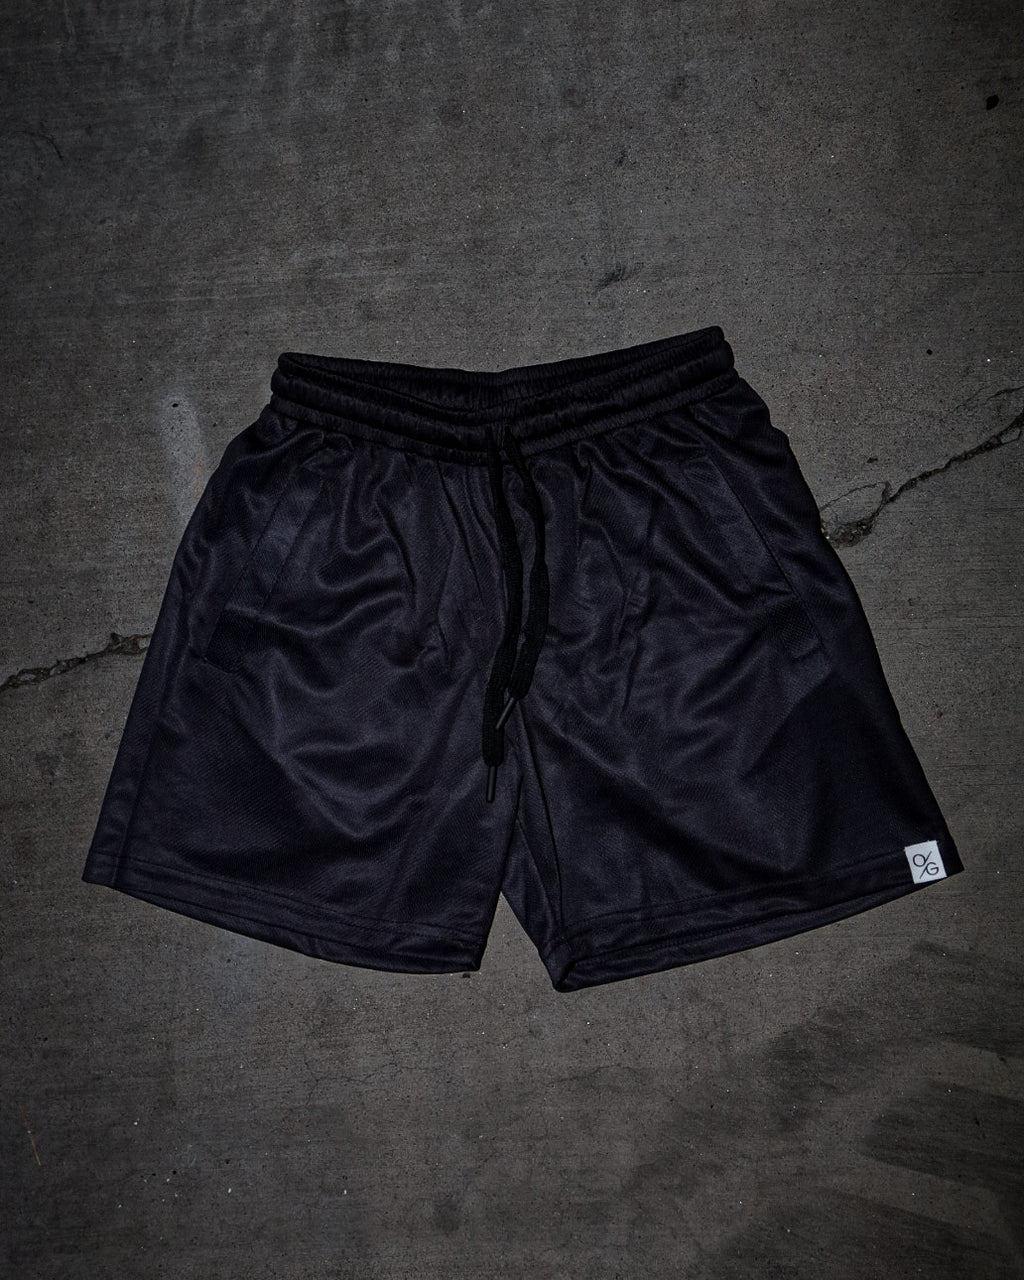 Original OG Shorts (Black)